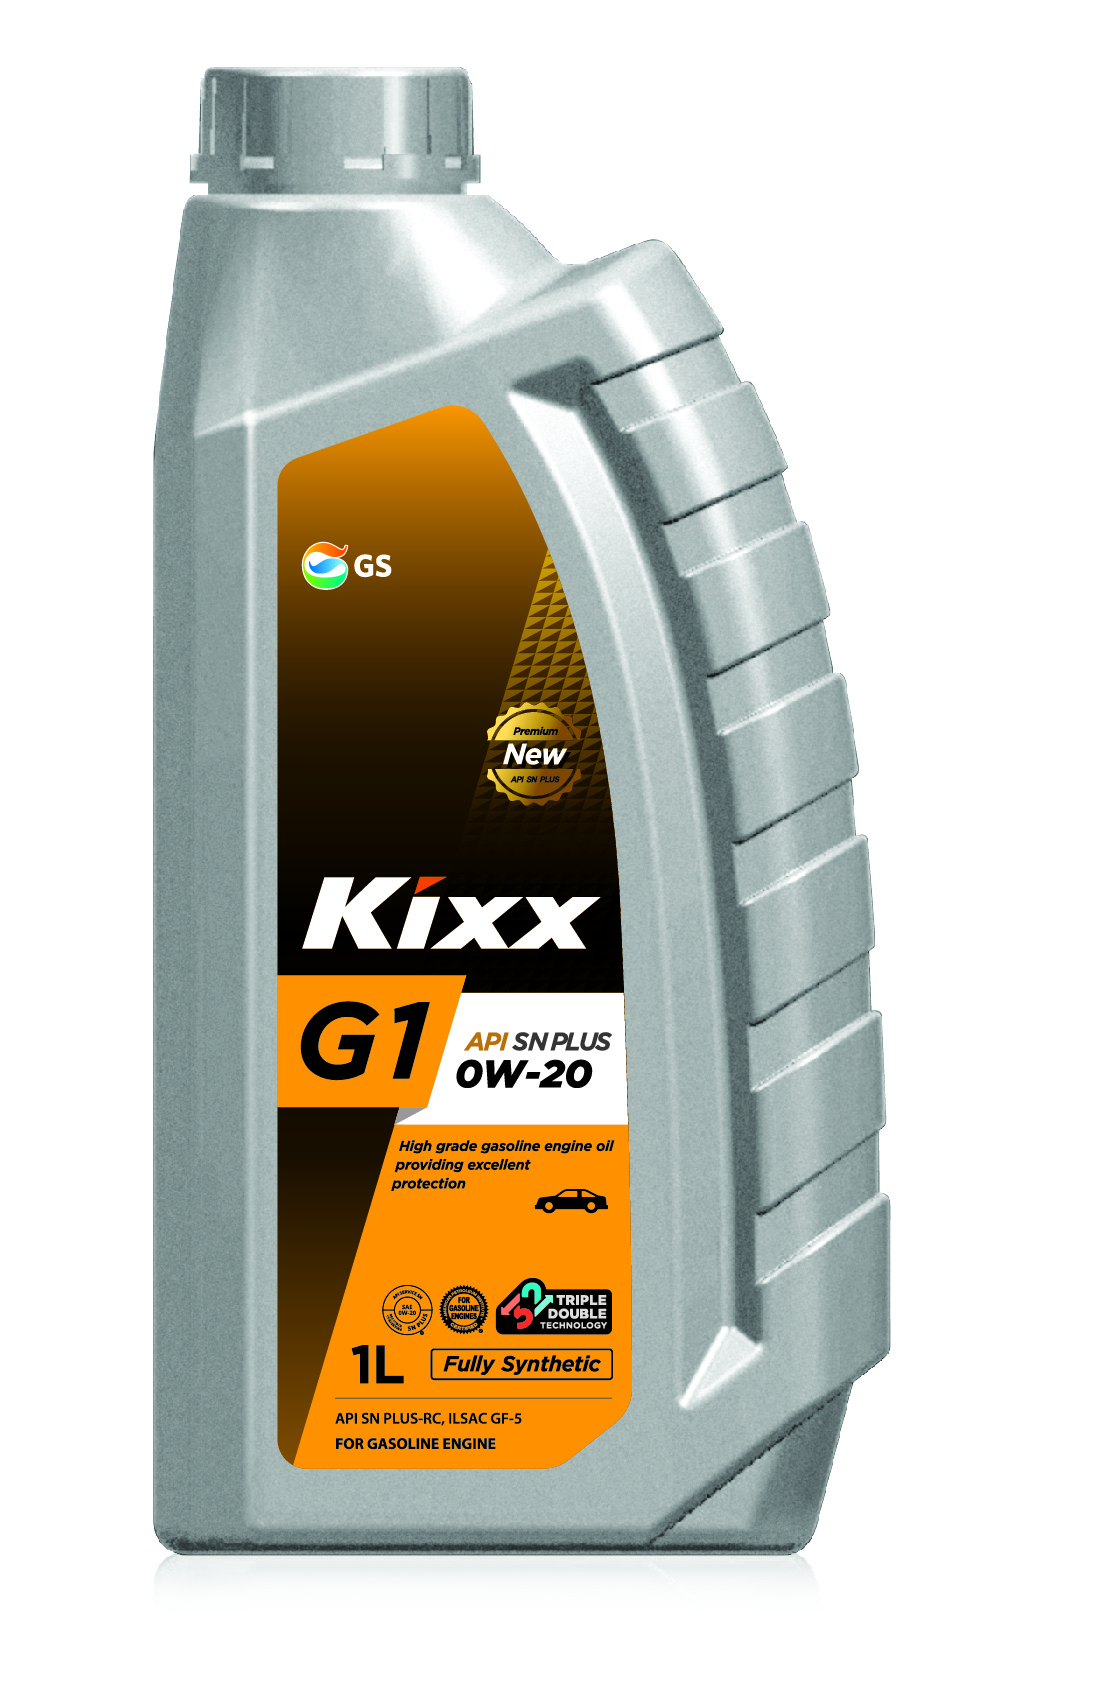 Kixx G1 SN plus 0w20 1L масло моторное   api: SN plus-rc  ilsac gf-5, Fully Synthetic - KIXX L2098AL1E1